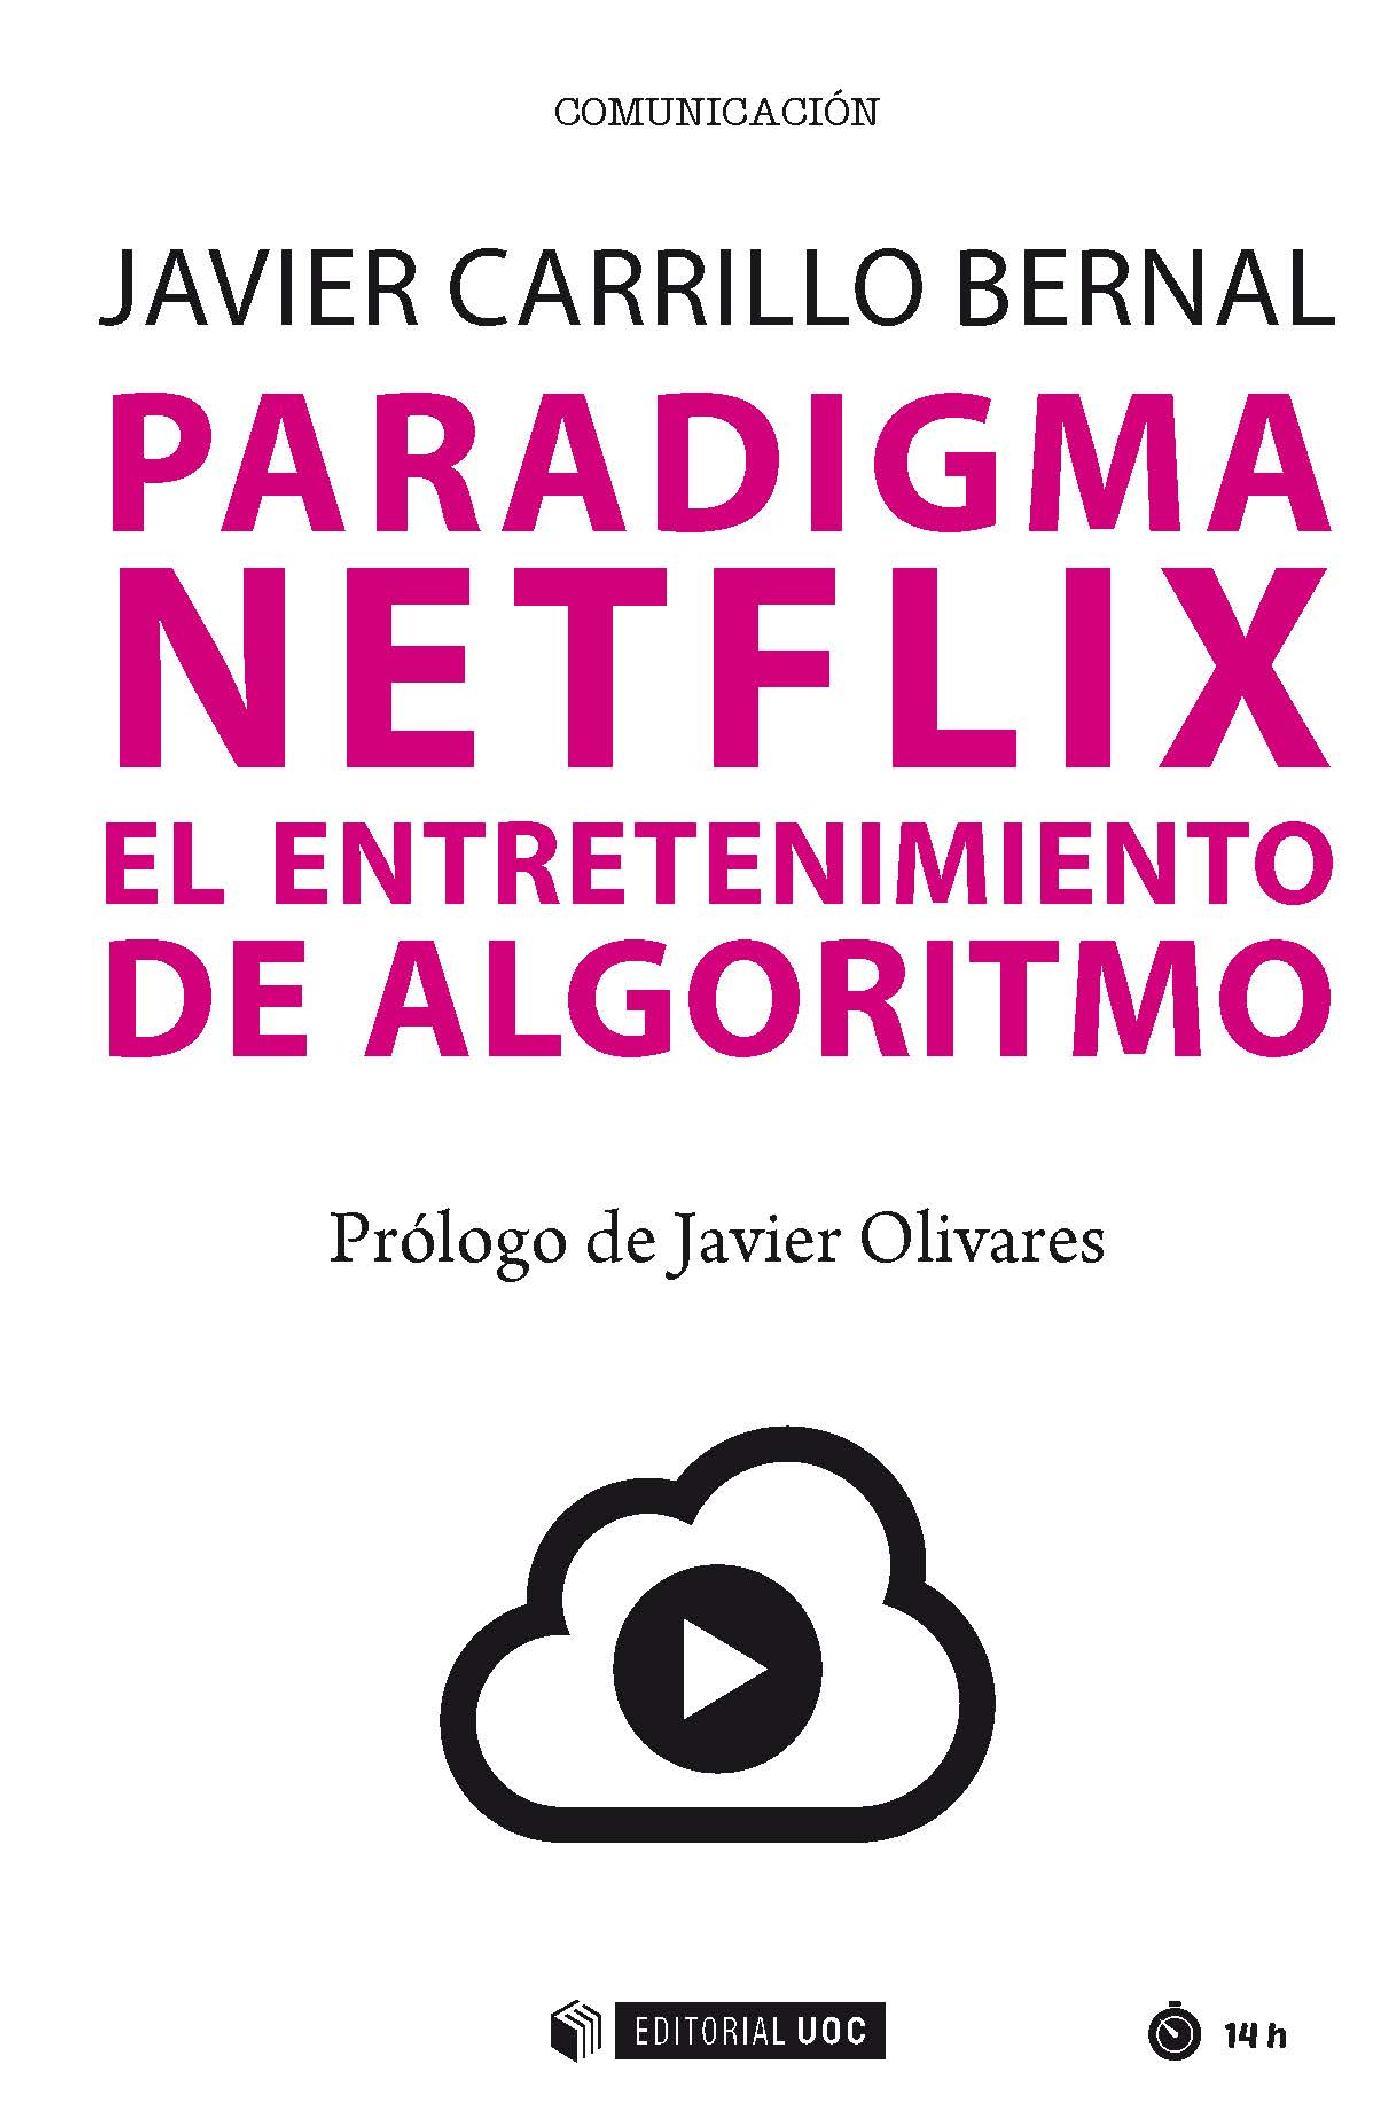 Paradigma Netflix